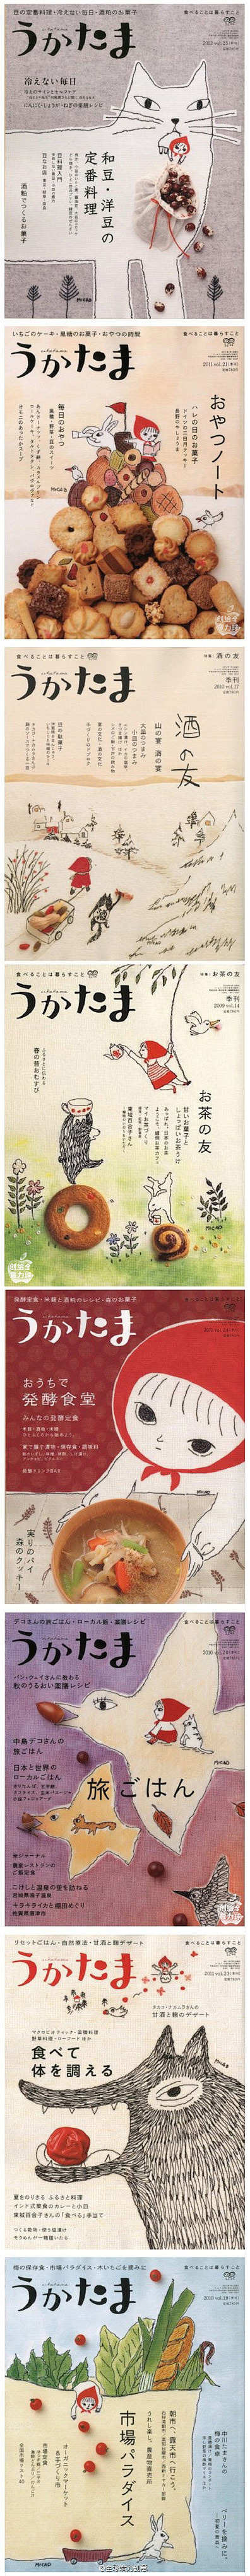 日本食物杂志封面 #排版#  #日系#